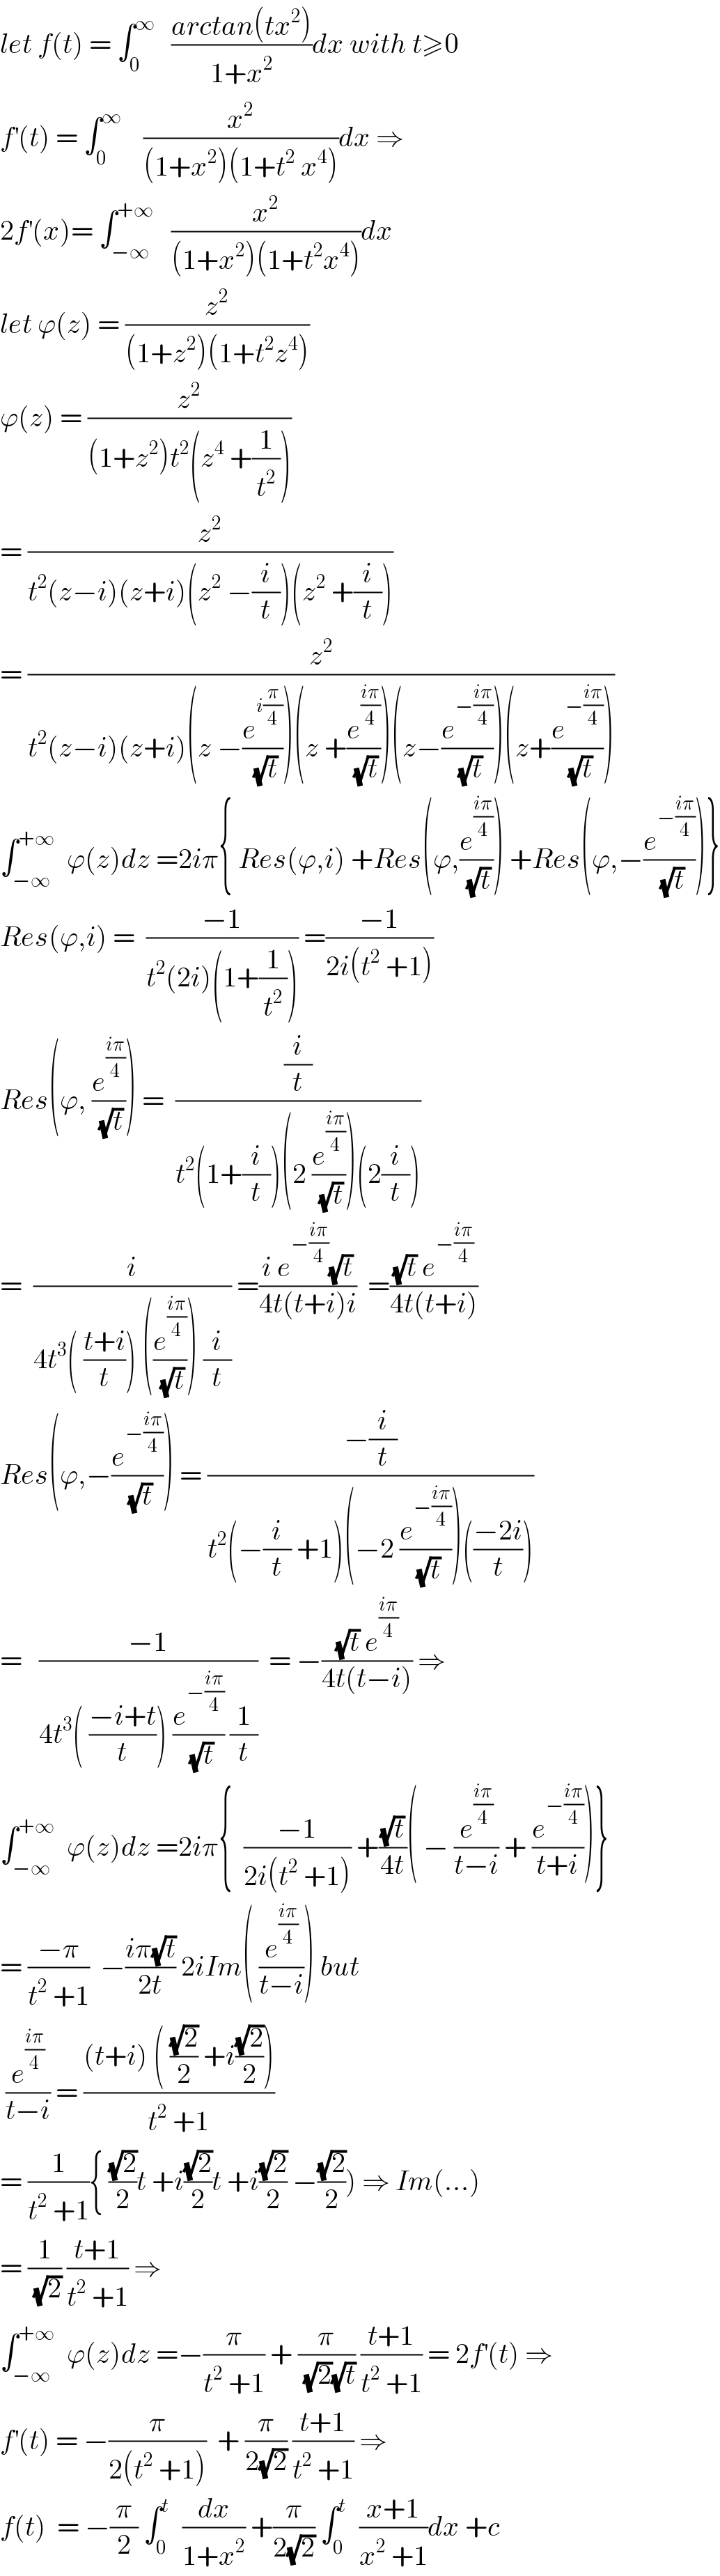 let f(t) = ∫_0 ^∞    ((arctan(tx^2 ))/(1+x^2 ))dx with t≥0  f^′ (t) = ∫_0 ^∞     (x^2 /((1+x^2 )(1+t^2  x^4 )))dx ⇒  2f^′ (x)= ∫_(−∞) ^(+∞)    (x^2 /((1+x^2 )(1+t^2 x^4 )))dx  let ϕ(z) = (z^2 /((1+z^2 )(1+t^2 z^4 )))  ϕ(z) = (z^2 /((1+z^2 )t^2 (z^4  +(1/t^2 ))))  = (z^2 /(t^2 (z−i)(z+i)(z^2  −(i/t))(z^2  +(i/t))))  = (z^2 /(t^2 (z−i)(z+i)(z −(e^(i(π/4)) /(√t)))(z +(e^((iπ)/4) /(√t)))(z−(e^(−((iπ)/4)) /(√t)))(z+(e^(−((iπ)/4)) /(√t)))))  ∫_(−∞) ^(+∞)   ϕ(z)dz =2iπ{ Res(ϕ,i) +Res(ϕ,(e^((iπ)/4) /(√t))) +Res(ϕ,−(e^(−((iπ)/4)) /(√t)))}  Res(ϕ,i) =  ((−1)/(t^2 (2i)(1+(1/t^2 )))) =((−1)/(2i(t^2  +1)))  Res(ϕ, (e^((iπ)/4) /(√t))) =  ((i/t)/(t^2 (1+(i/t))(2 (e^((iπ)/4) /(√t)))(2(i/t))))  =  (i/(4t^3 ( ((t+i)/t)) ((e^((iπ)/4) /(√t))) (i/t))) =((i e^(−((iπ)/4)) (√t))/(4t(t+i)i))  =(((√t) e^(−((iπ)/4)) )/(4t(t+i)))  Res(ϕ,−(e^(−((iπ)/4)) /(√t))) = ((−(i/t))/(t^2 (−(i/t) +1)(−2 (e^(−((iπ)/4)) /(√t)))(((−2i)/t))))  =   ((−1)/(4t^3 ( ((−i+t)/t)) (e^(−((iπ)/4)) /(√t)) (1/t)))  = −(((√t) e^((iπ)/4) )/(4t(t−i))) ⇒  ∫_(−∞) ^(+∞)   ϕ(z)dz =2iπ{  ((−1)/(2i(t^2  +1))) +((√t)/(4t))( − (e^((iπ)/4) /(t−i)) + (e^(−((iπ)/4)) /(t+i)))}  = ((−π)/(t^2  +1))  −((iπ(√t))/(2t)) 2iIm( (e^((iπ)/4) /(t−i))) but   (e^((iπ)/4) /(t−i)) = (((t+i) ( ((√2)/2) +i((√2)/2)))/(t^2  +1))  = (1/(t^2  +1)){ ((√2)/2)t +i((√2)/2)t +i((√2)/2) −((√2)/2)) ⇒ Im(...)  = (1/(√2)) ((t+1)/(t^2  +1)) ⇒  ∫_(−∞) ^(+∞)   ϕ(z)dz =−(π/(t^2  +1)) + (π/((√2)(√t))) ((t+1)/(t^2  +1)) = 2f^′ (t) ⇒  f^′ (t) = −(π/(2(t^2  +1)))  + (π/(2(√2))) ((t+1)/(t^2  +1)) ⇒  f(t)  = −(π/2) ∫_0 ^t   (dx/(1+x^2 )) +(π/(2(√2))) ∫_0 ^t   ((x+1)/(x^2  +1))dx +c  